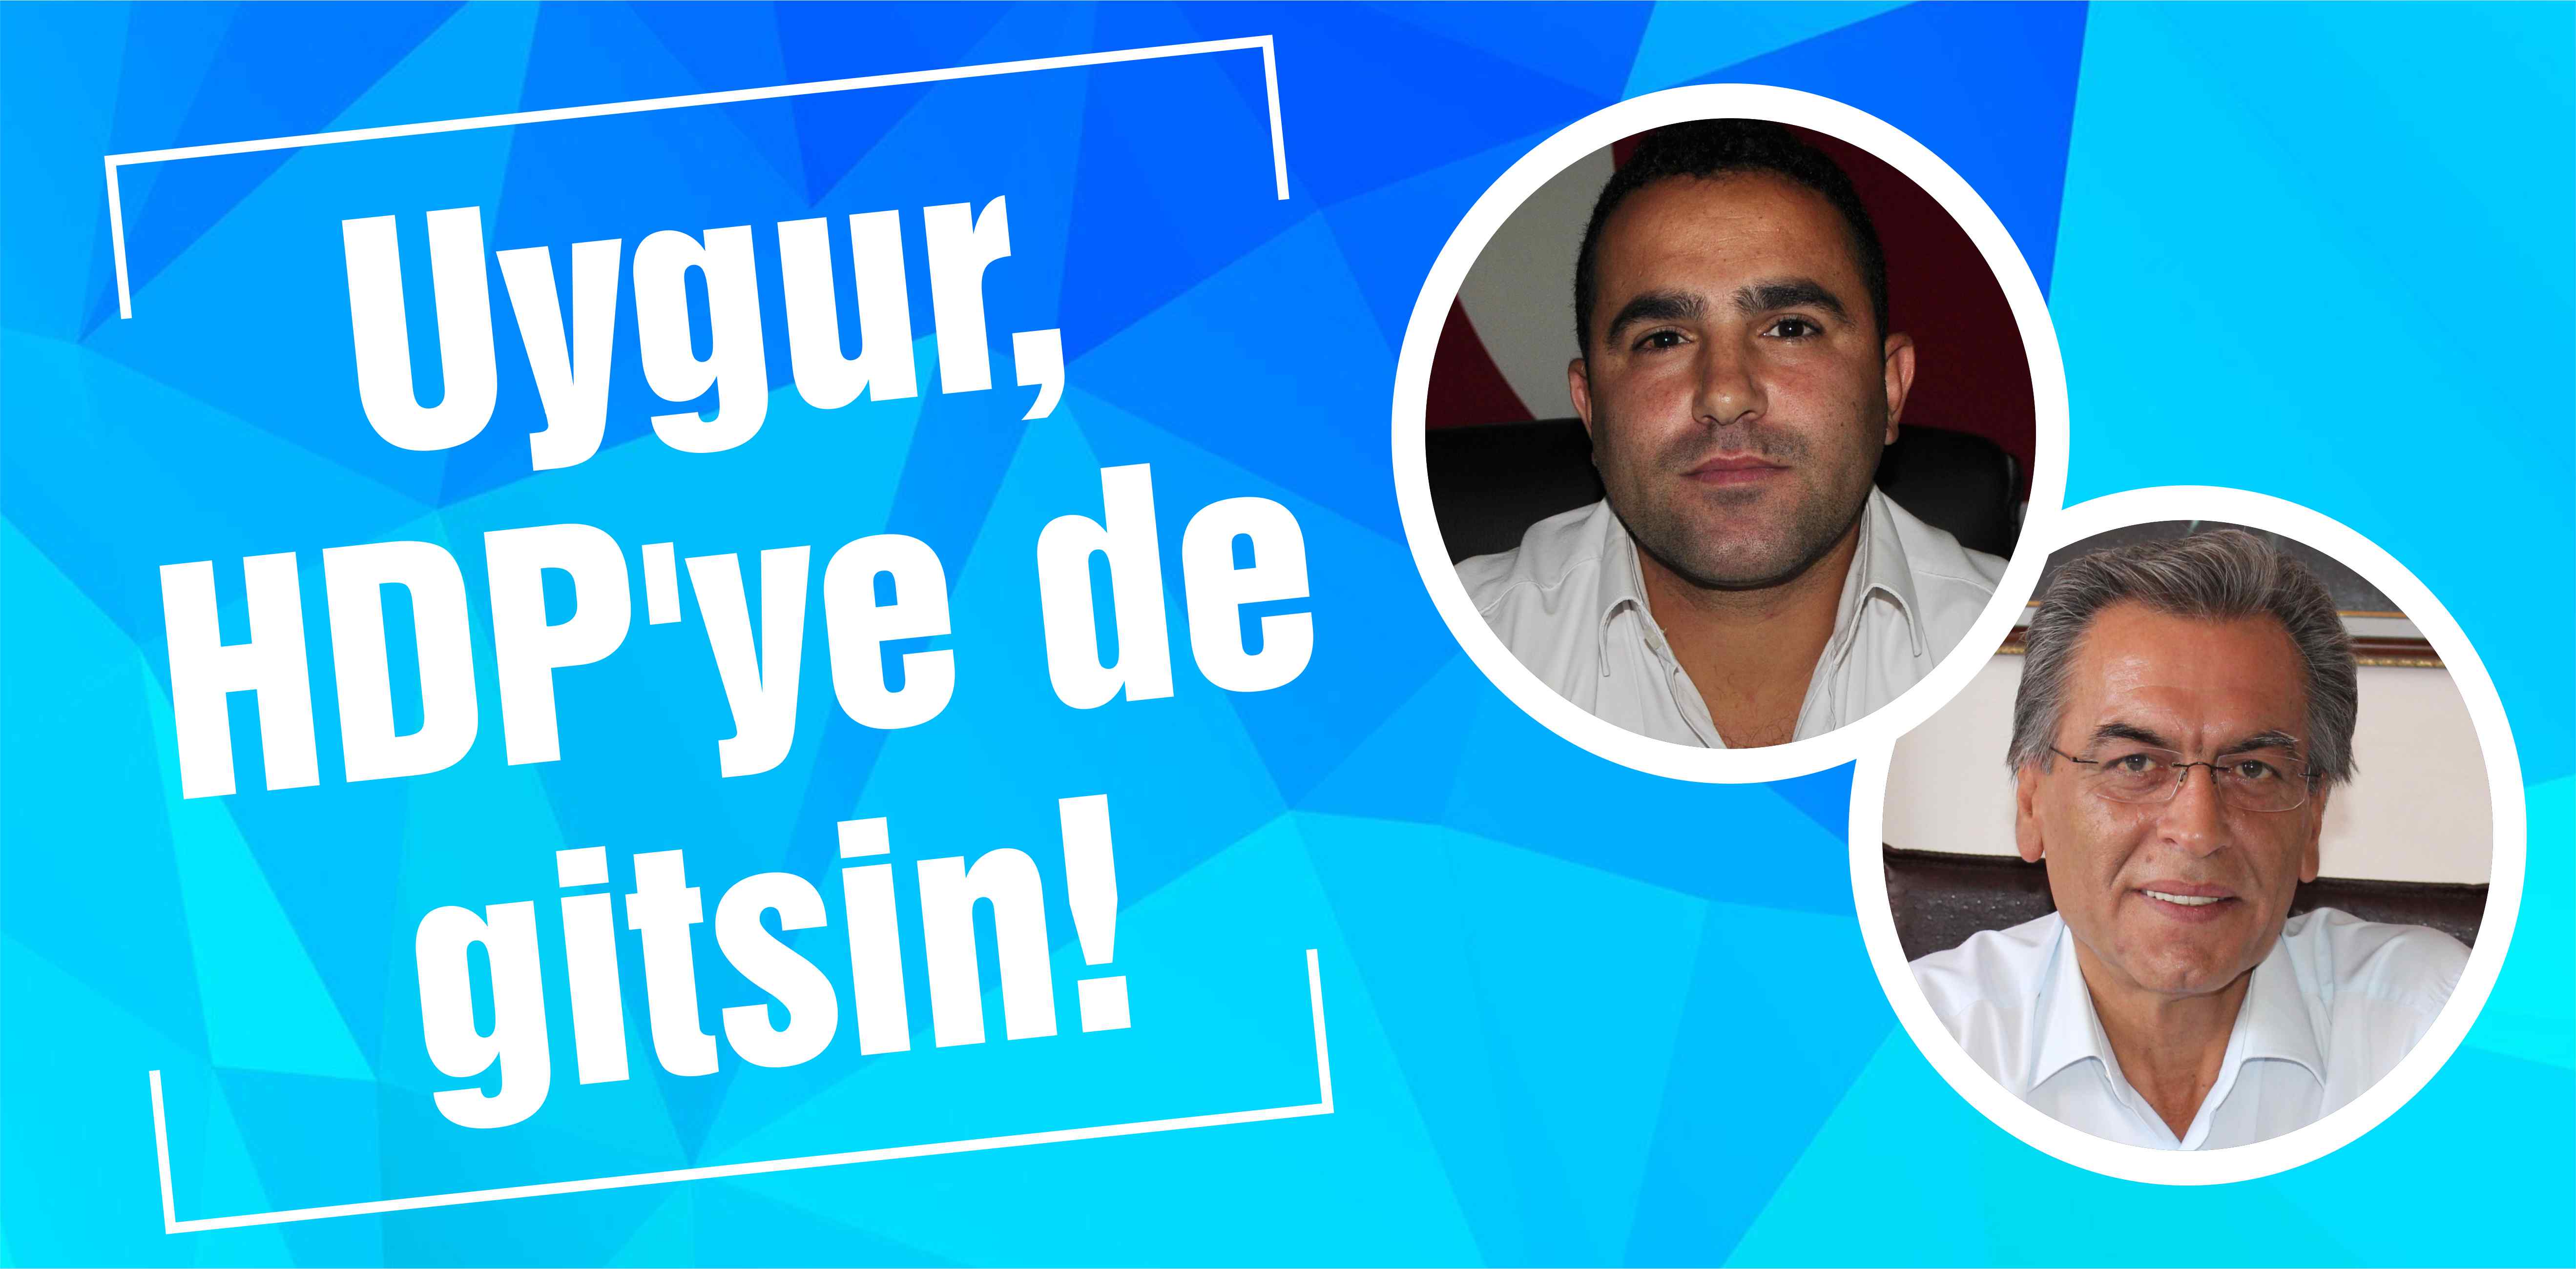 Uygur, HDP’ye de gitsin!